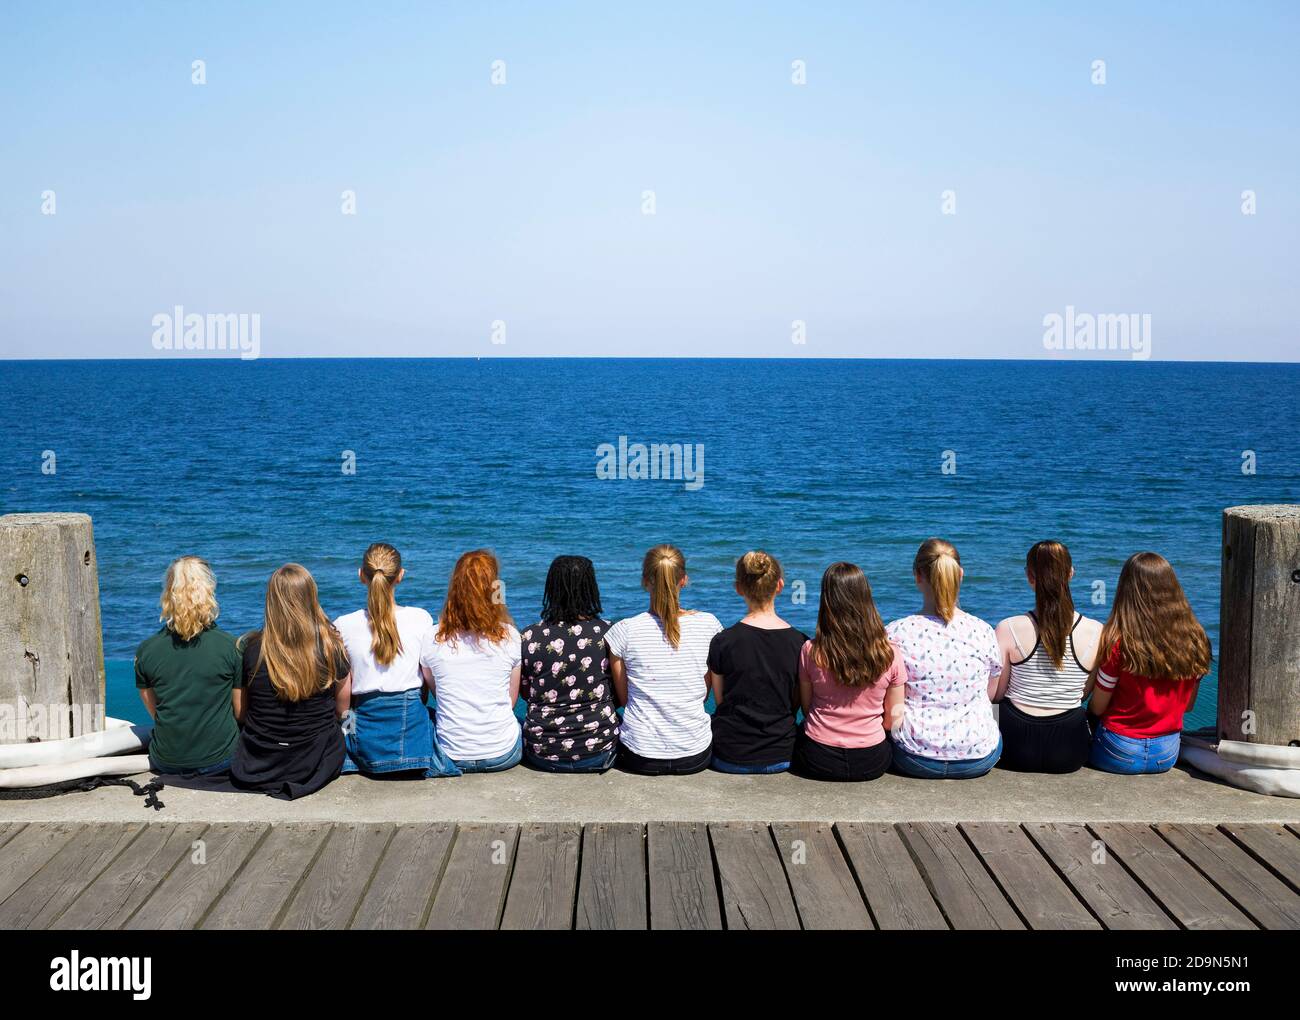 Un groupe de filles s'assoient les unes à côté des autres sur le quai et regardent la mer, Heligoland, Schleswig-Holstein, Allemagne Banque D'Images